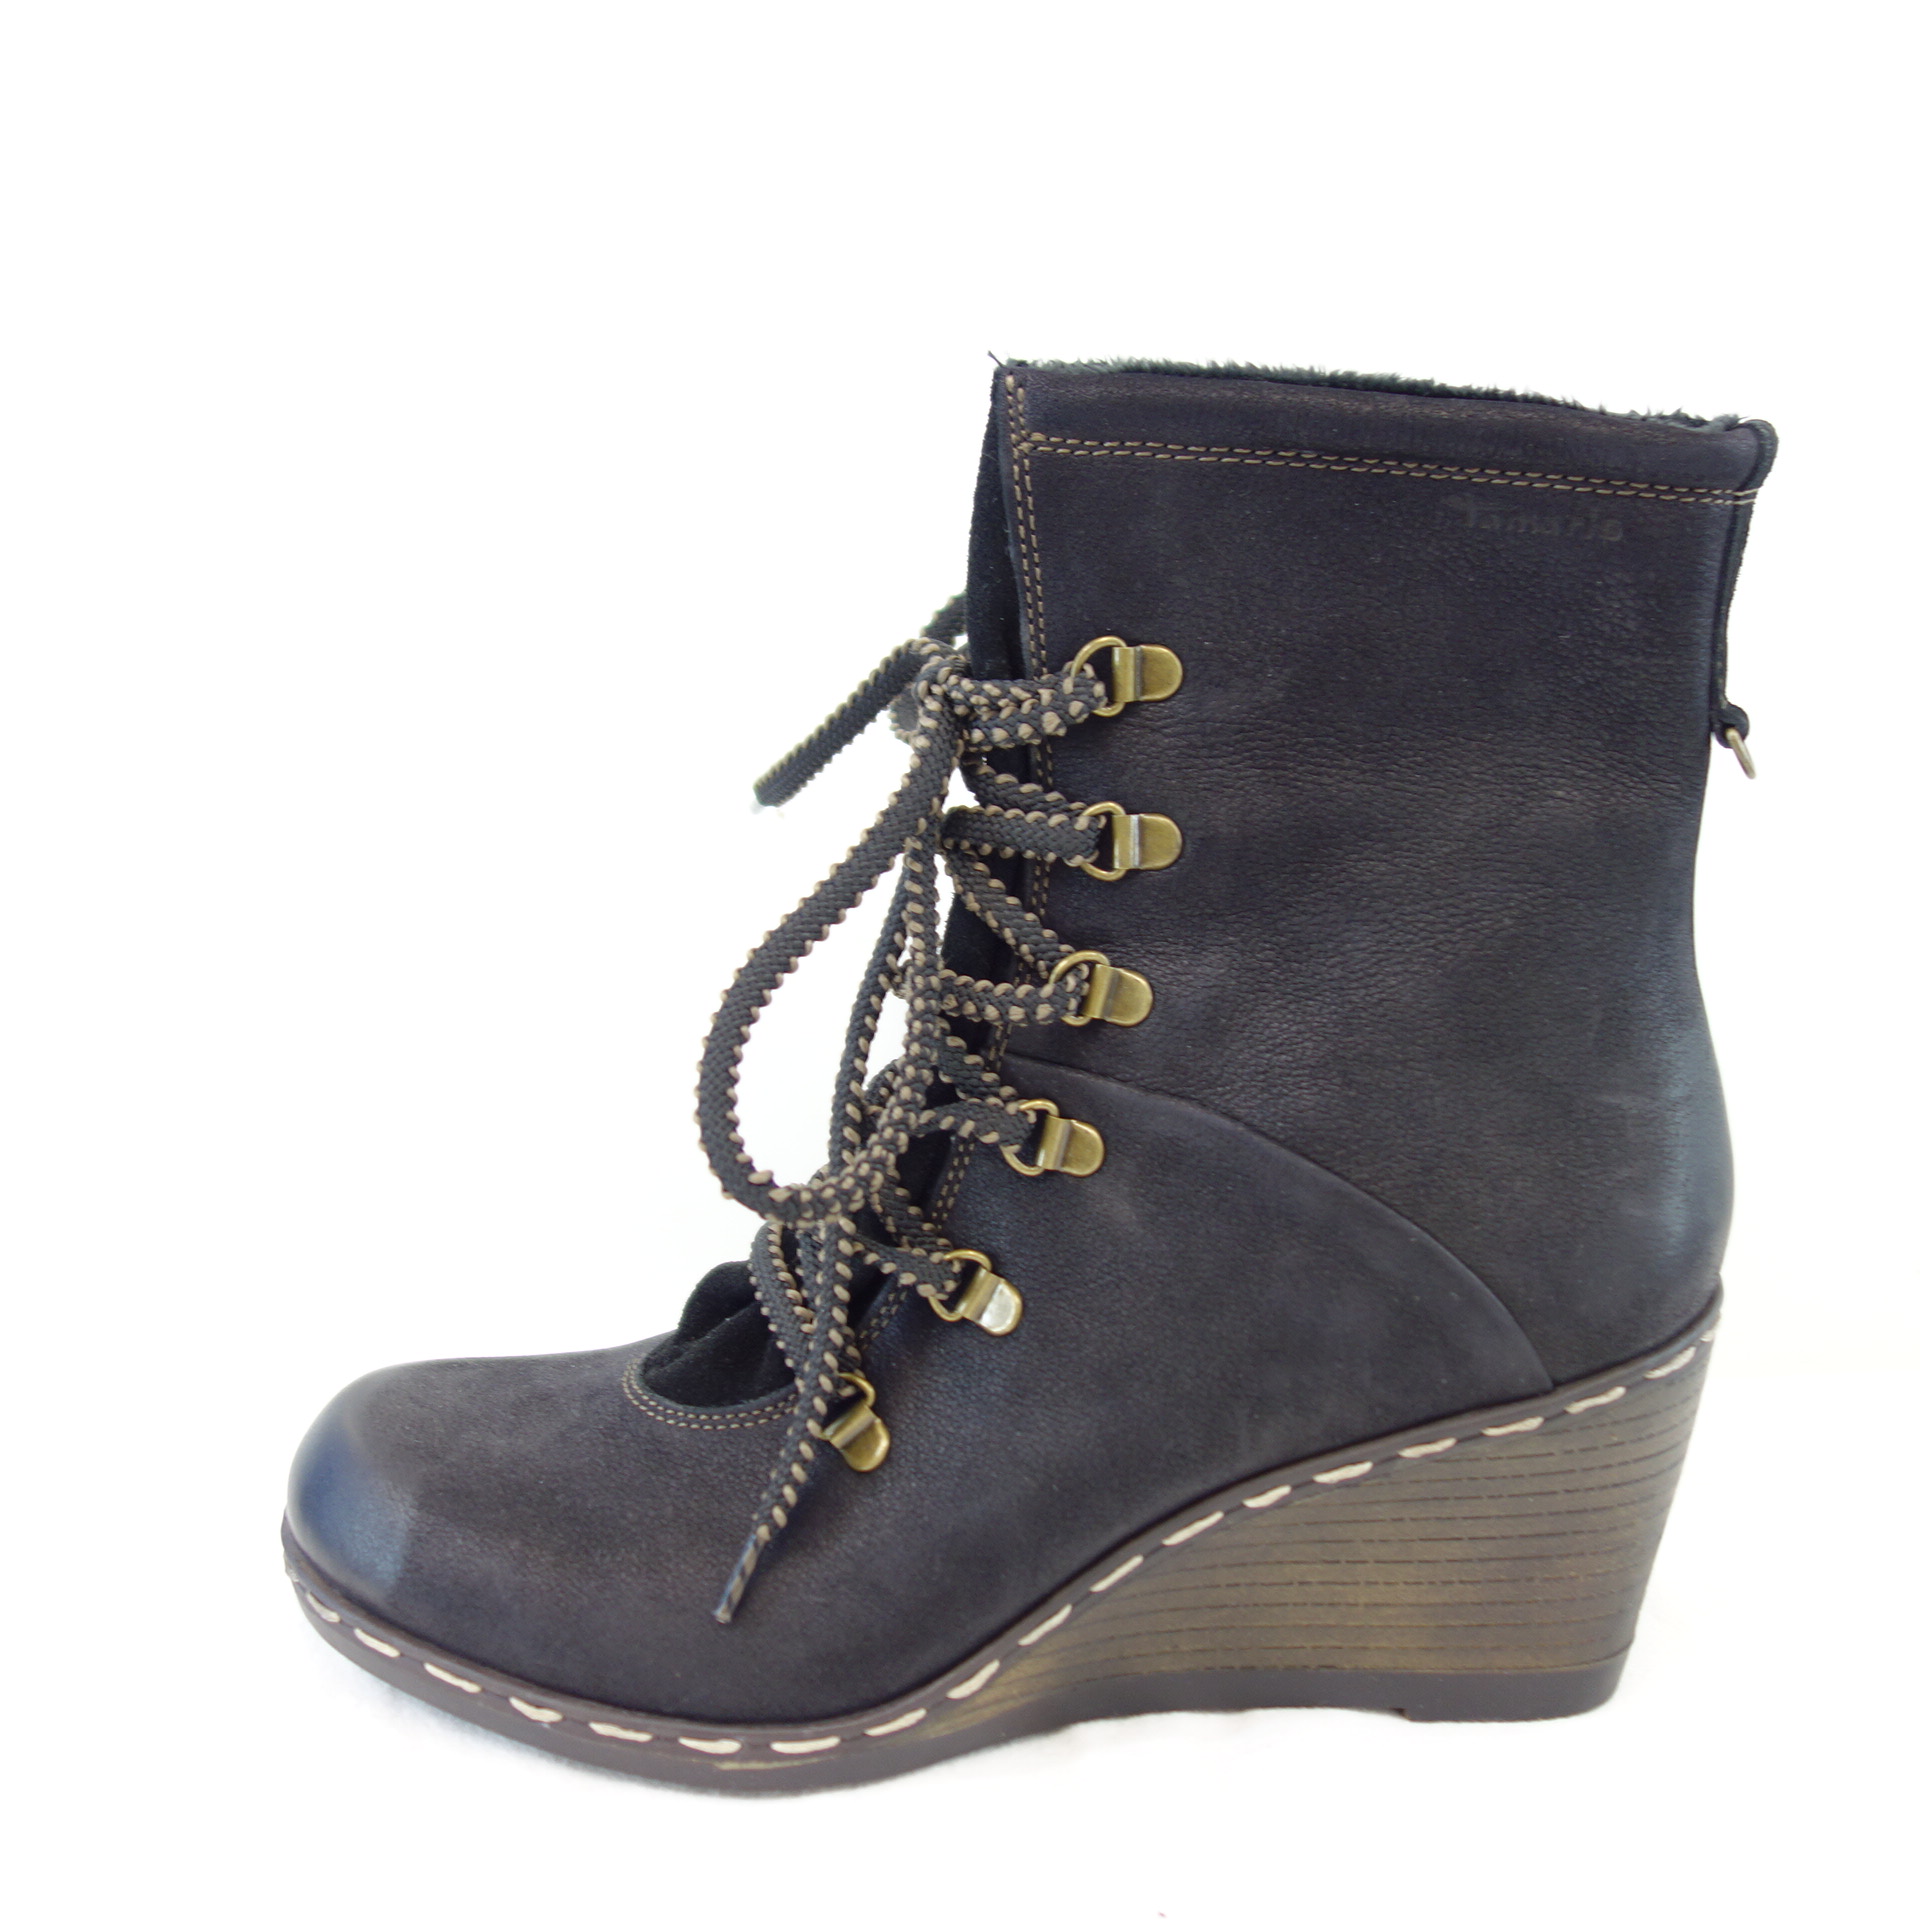 TAMARIS Damen Stiefeletten Boots Wedge 41 Leder Schuhe Np 95 | SCH554